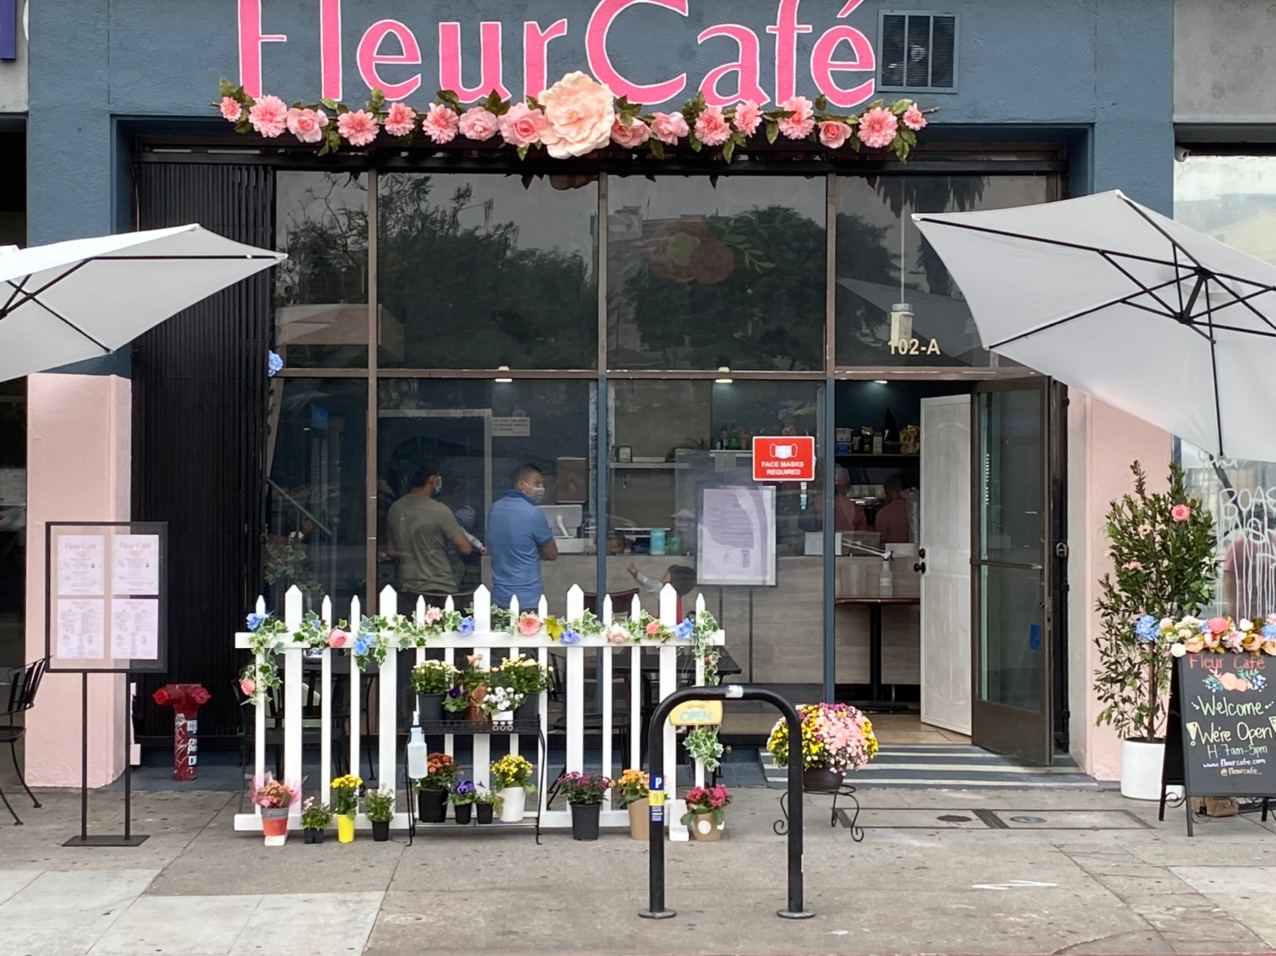 Fleur Café